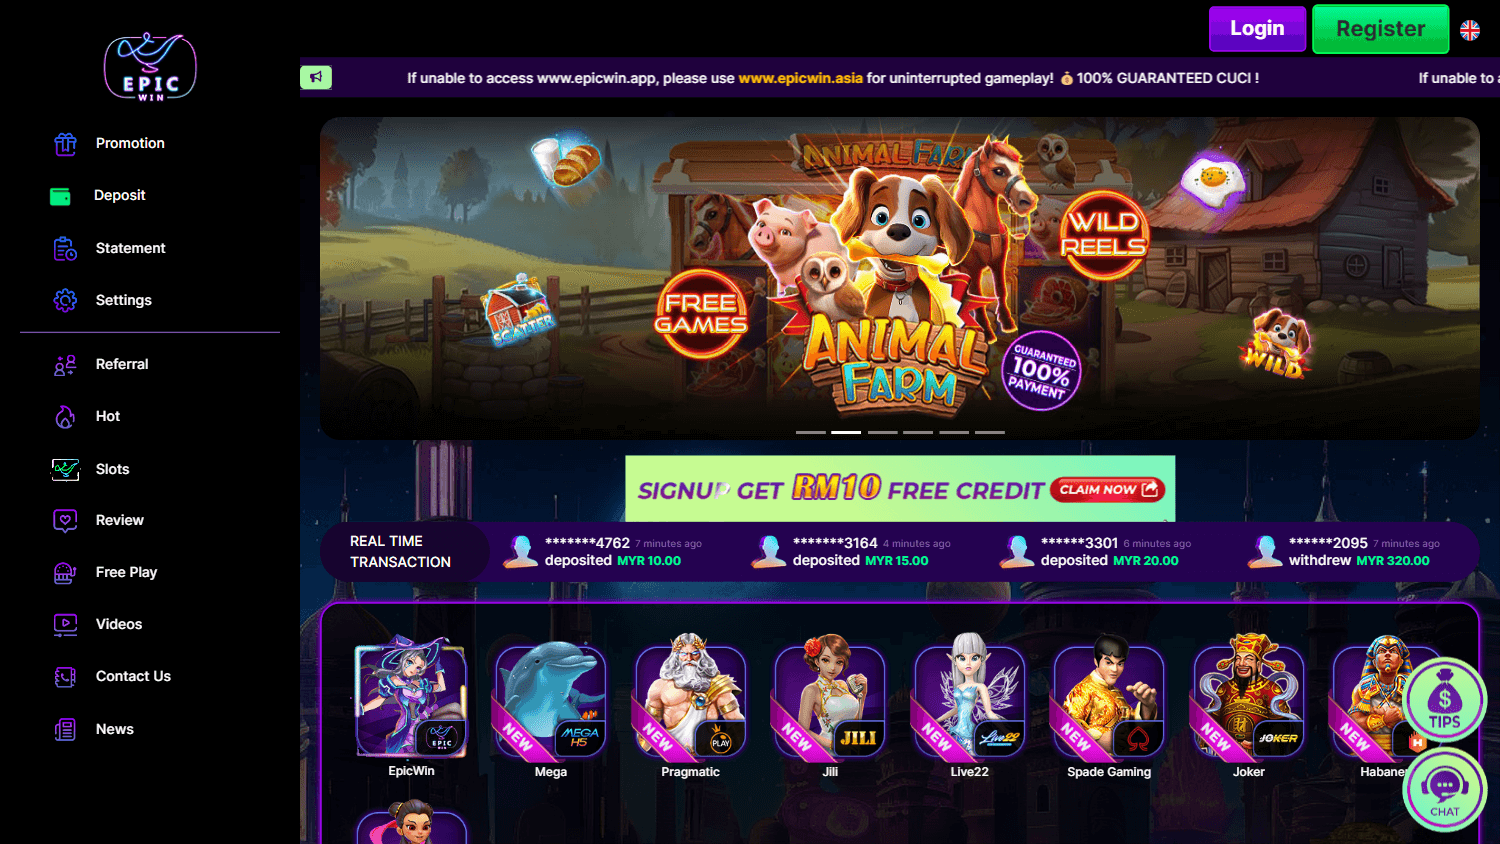 epic_win_casino_my_homepage_desktop